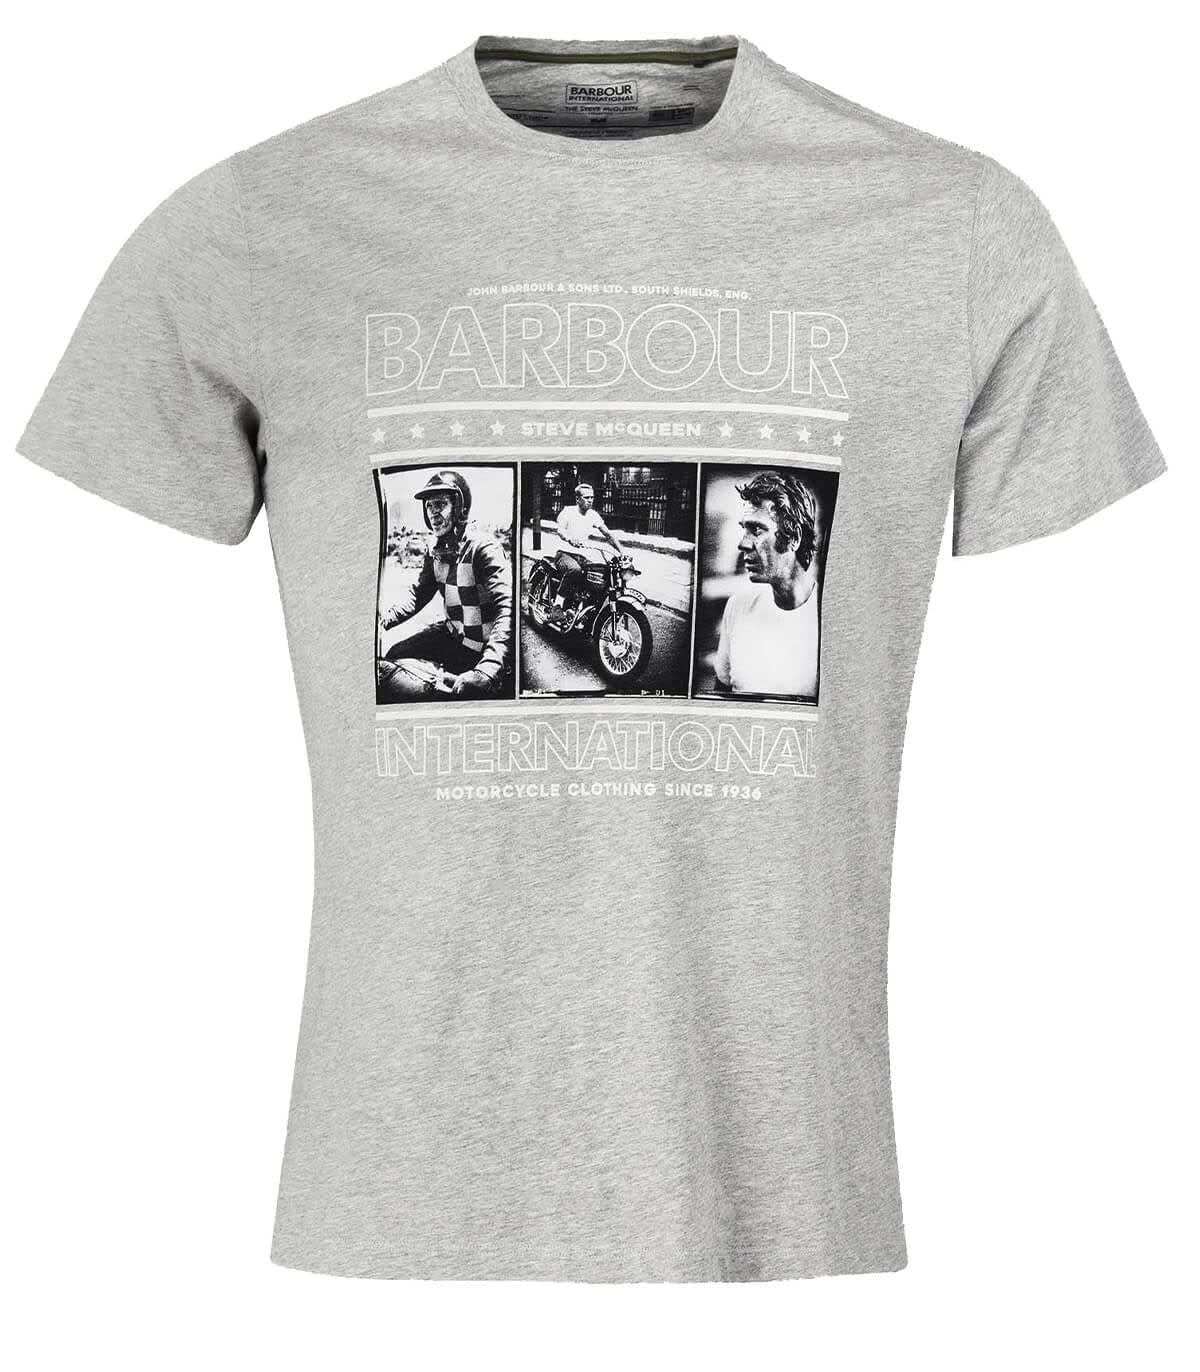 Barbour Reel Steve Mcqueen Melange Grey T-shirt